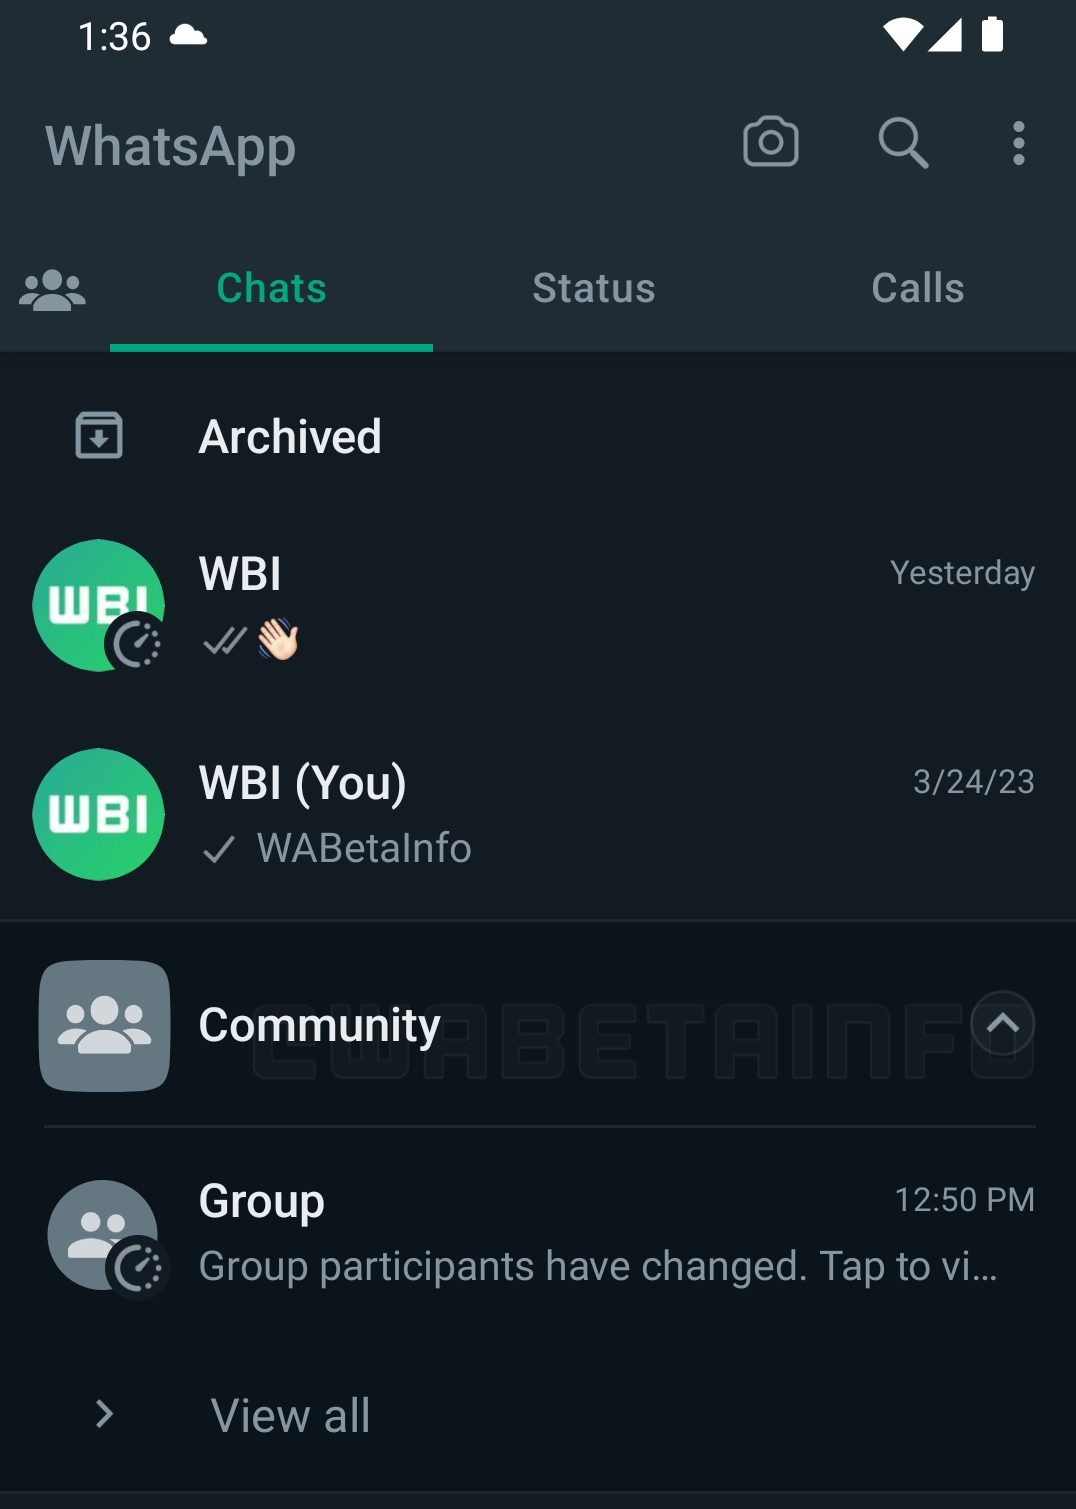 whatsapp community navigation 1 .jpg (220 KB)